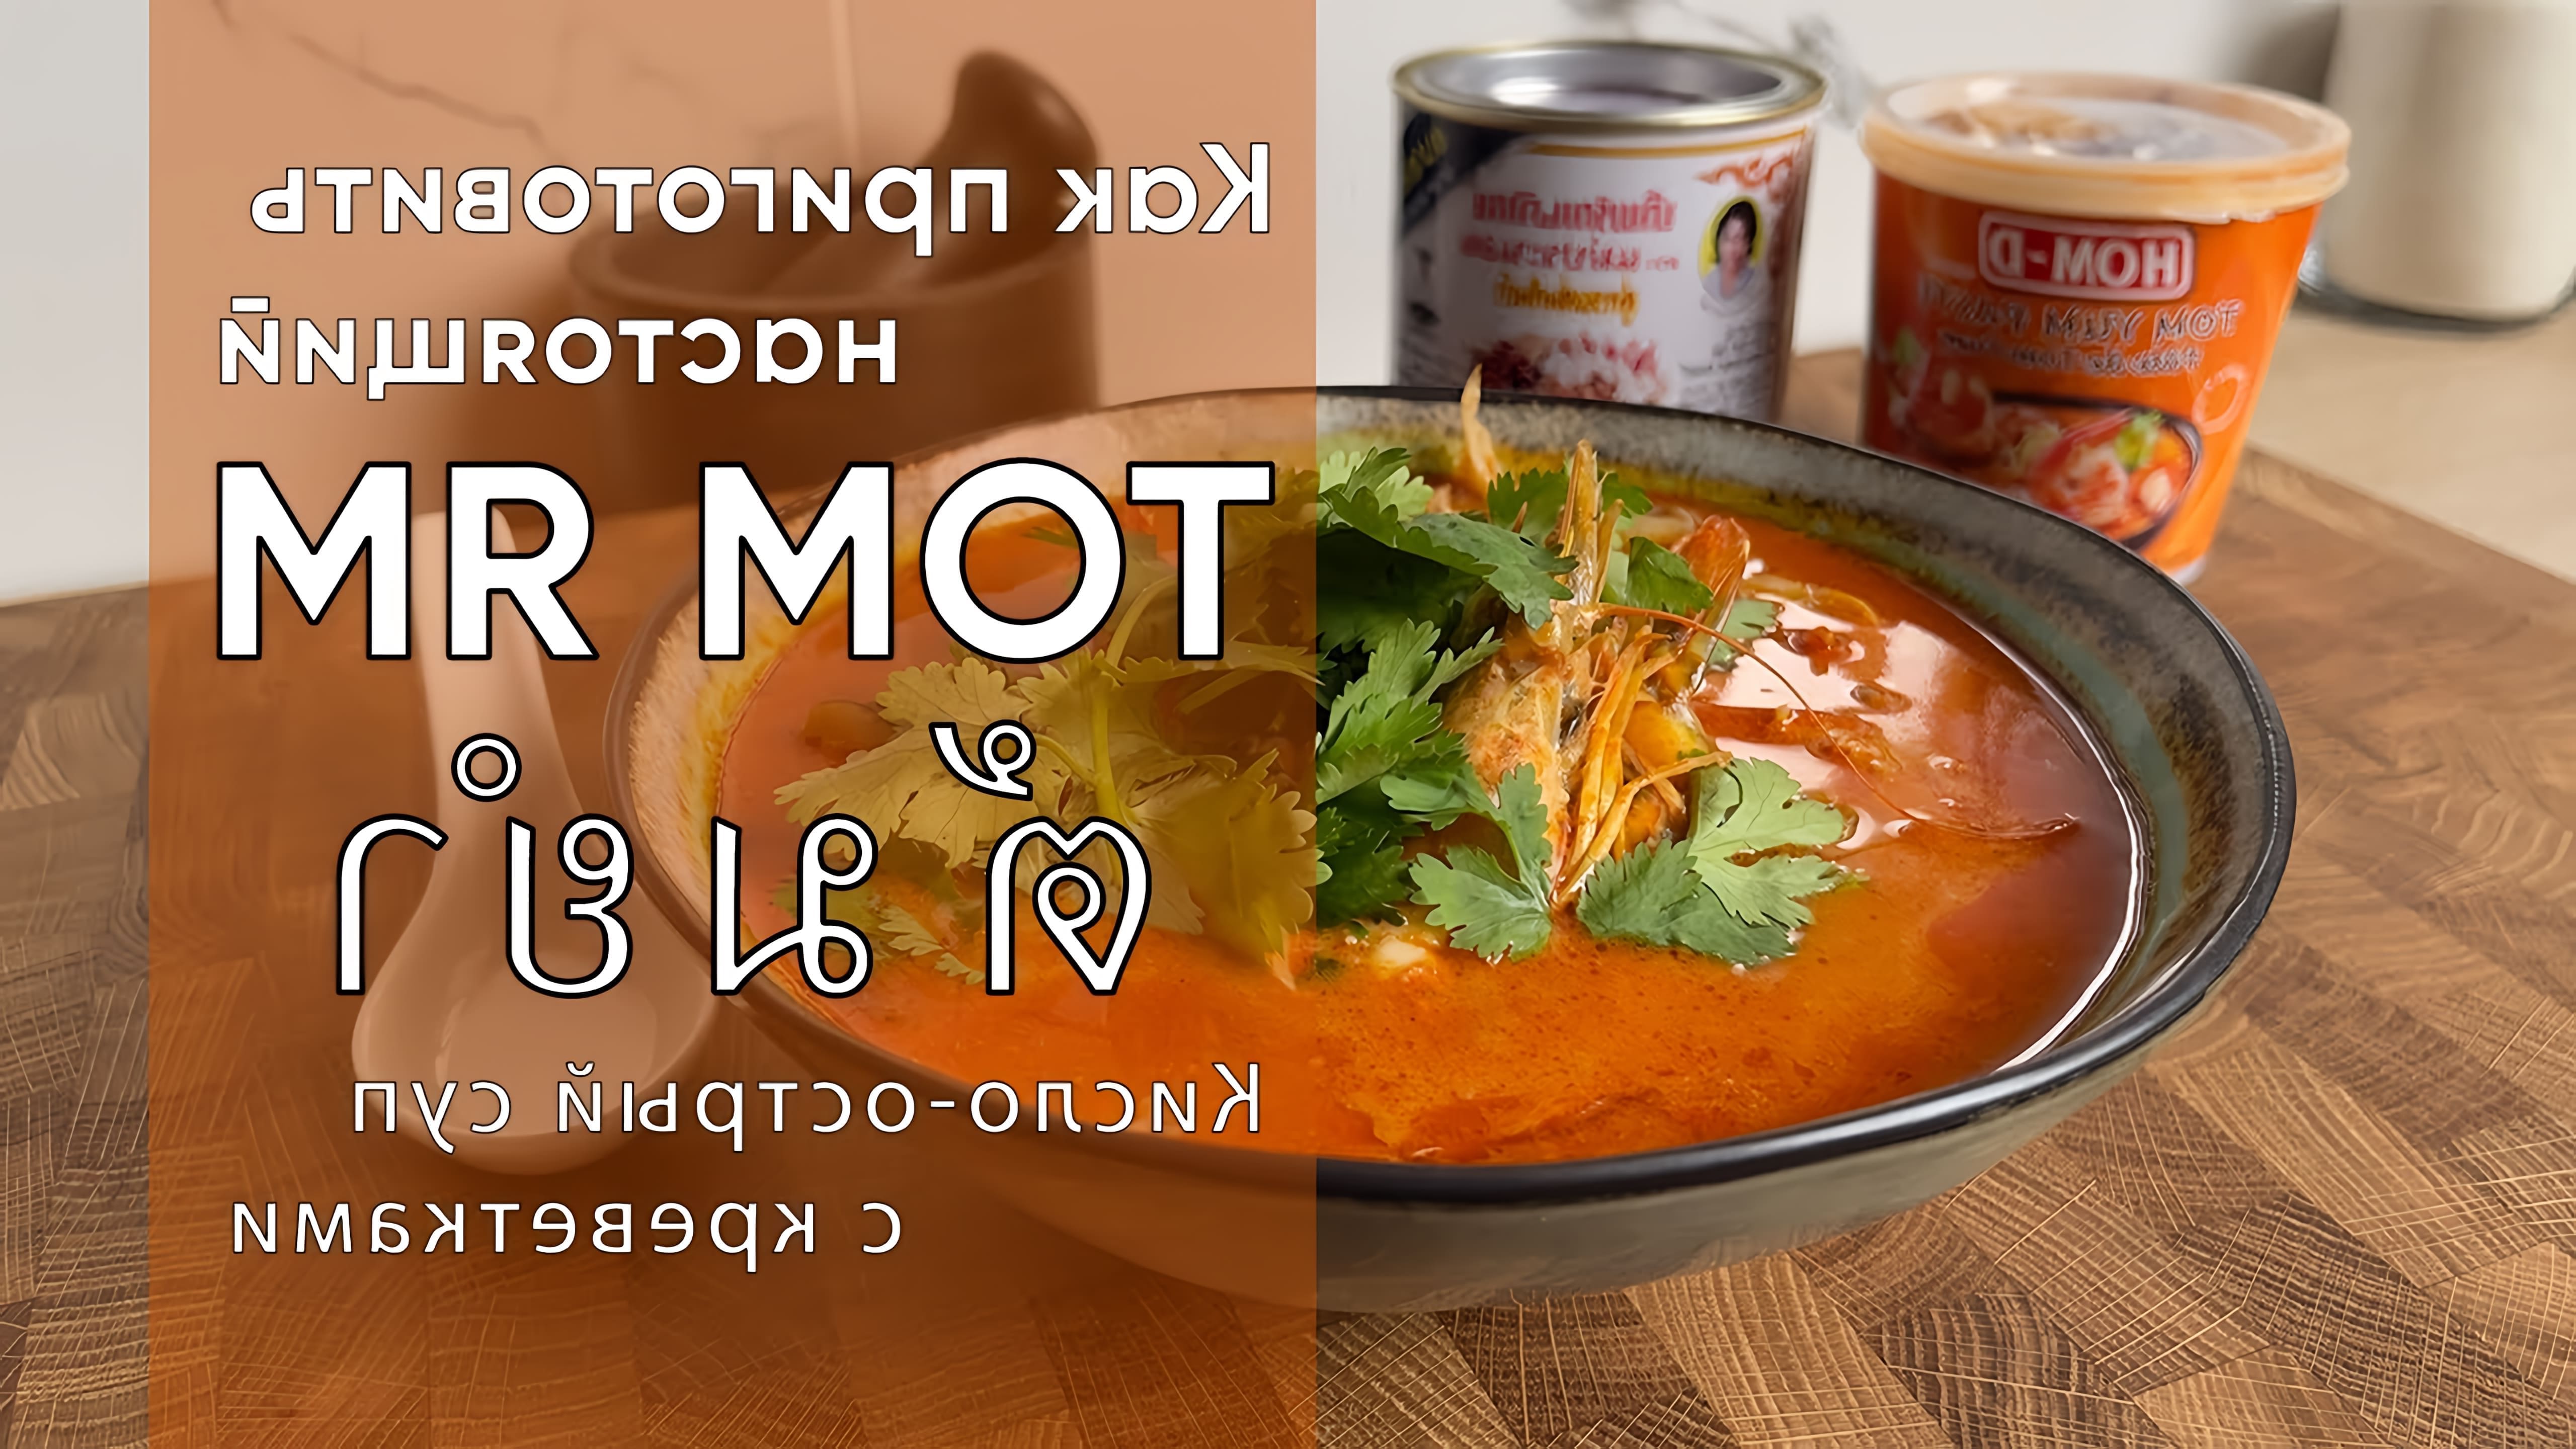 В этом видео демонстрируется рецепт традиционного тайского супа "Том Ям" с креветками